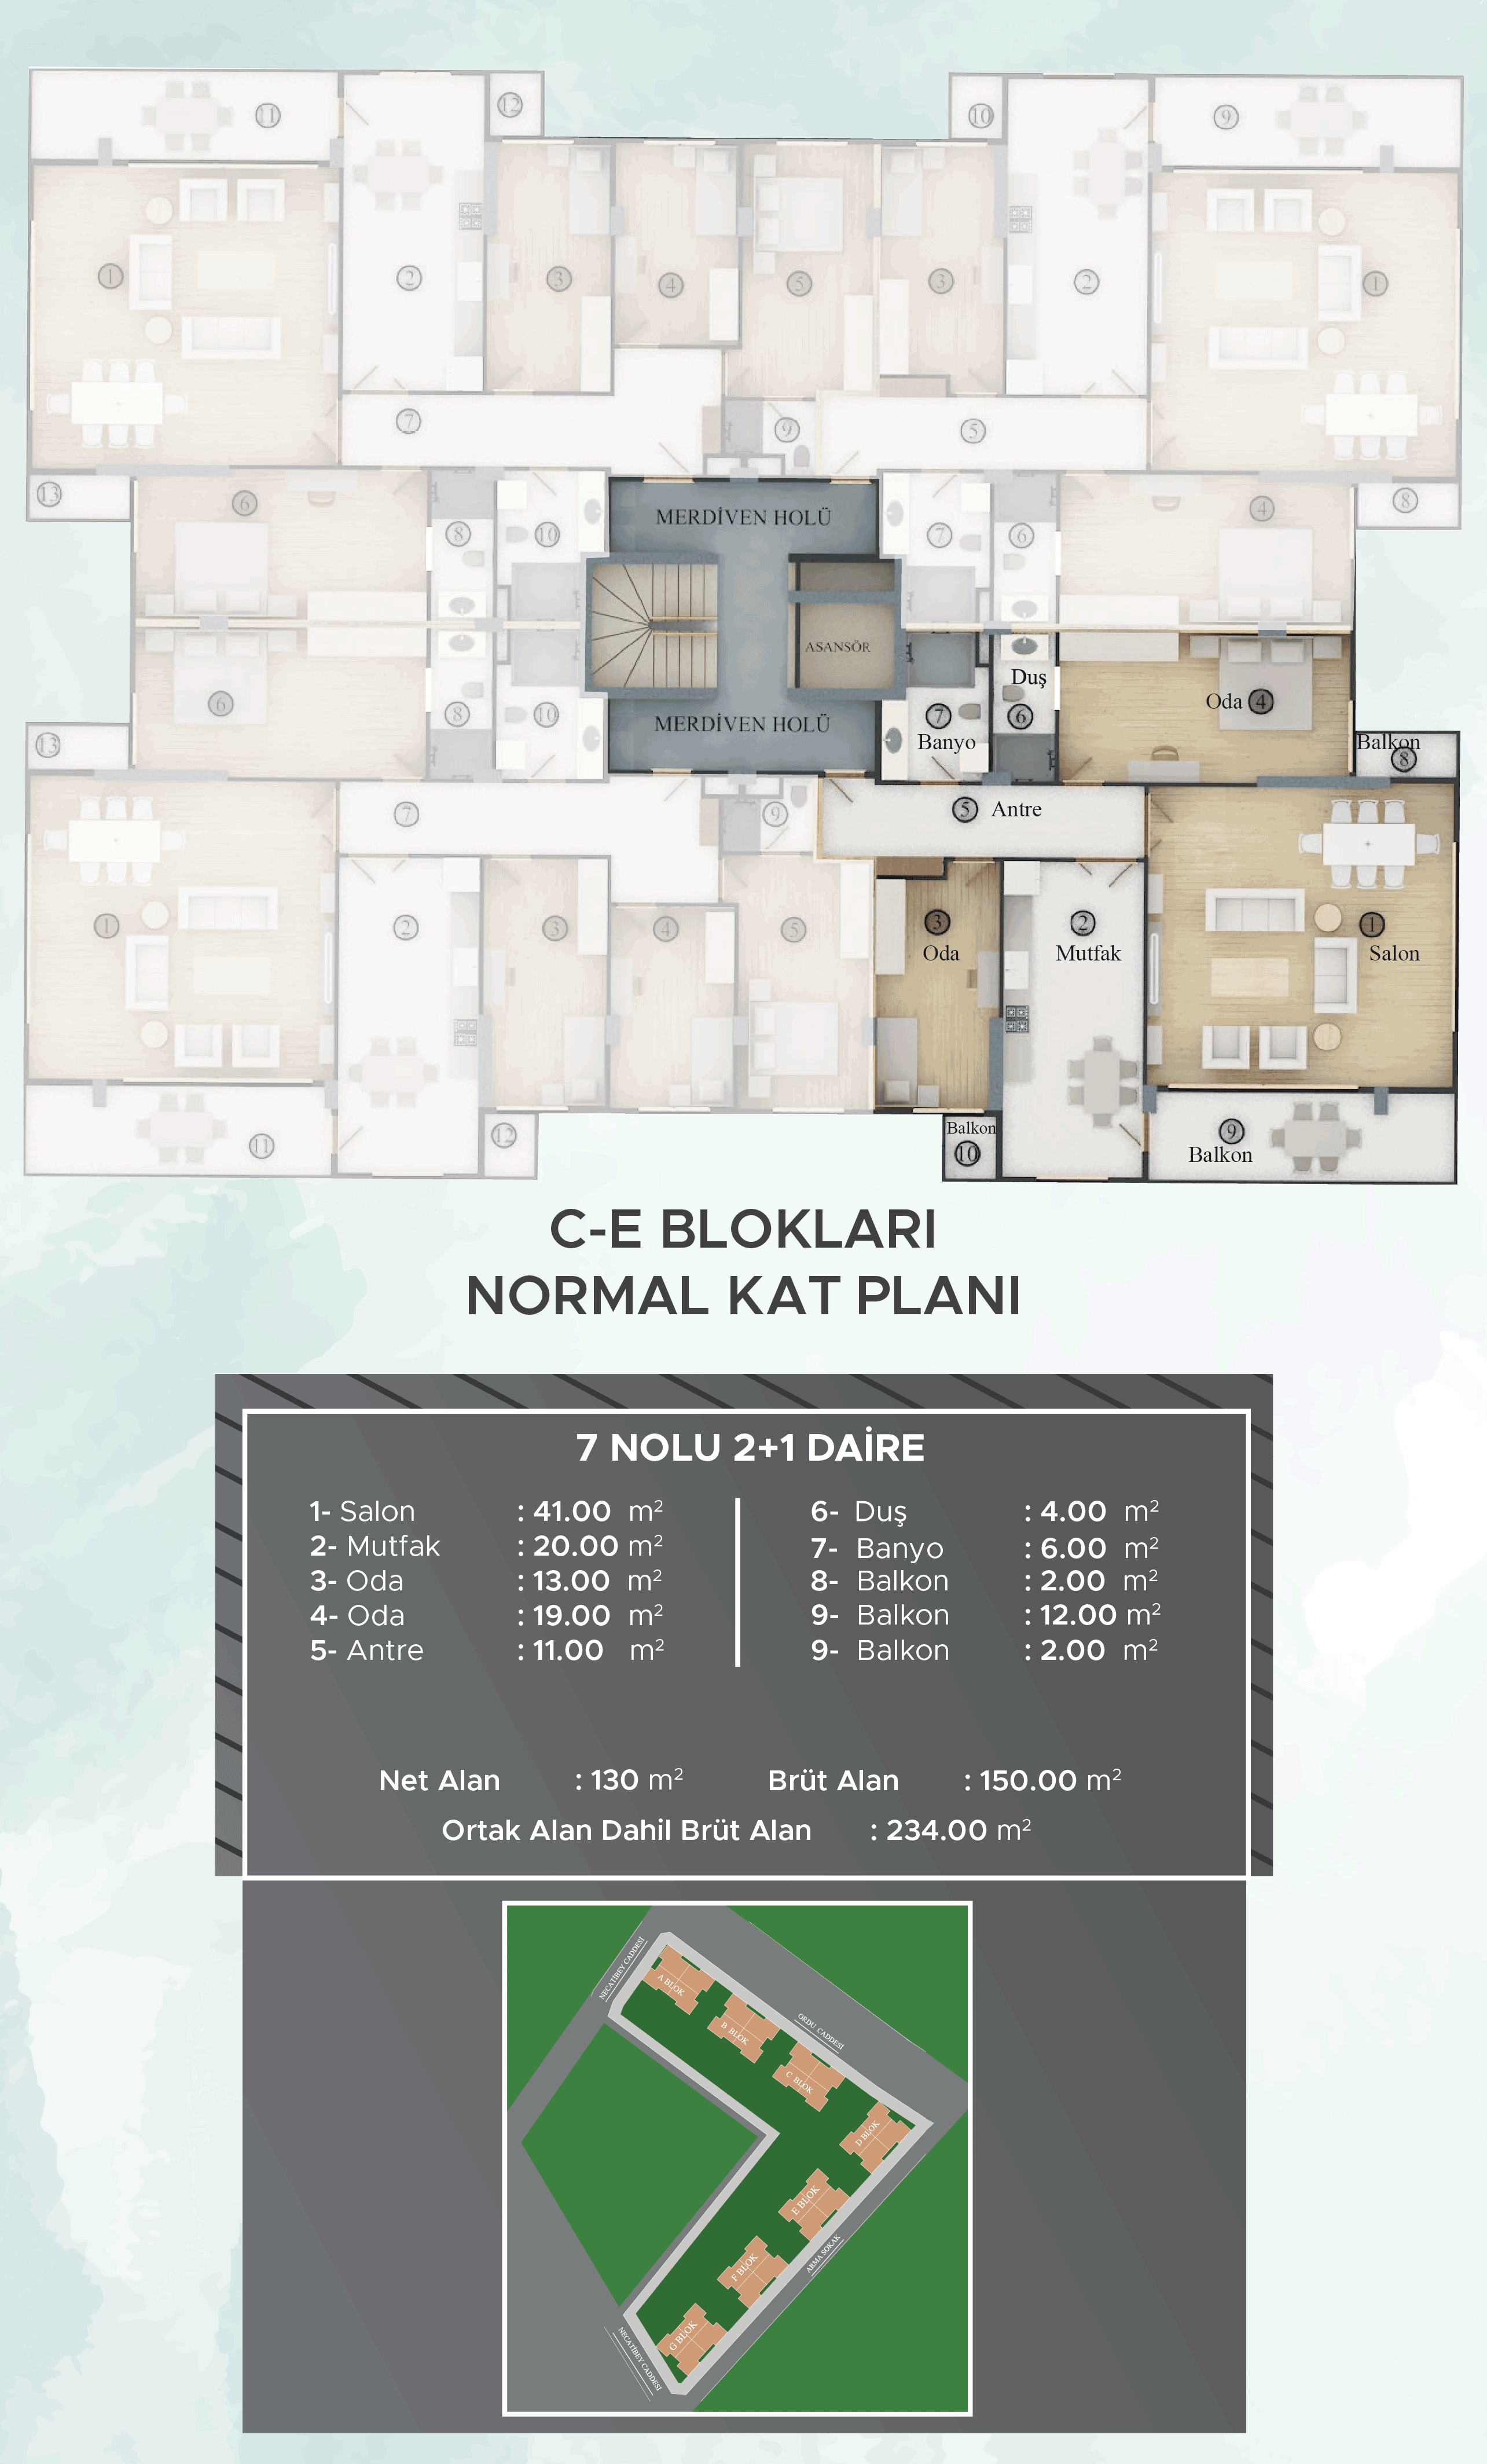 C-E Blokları Normal Kat Planları